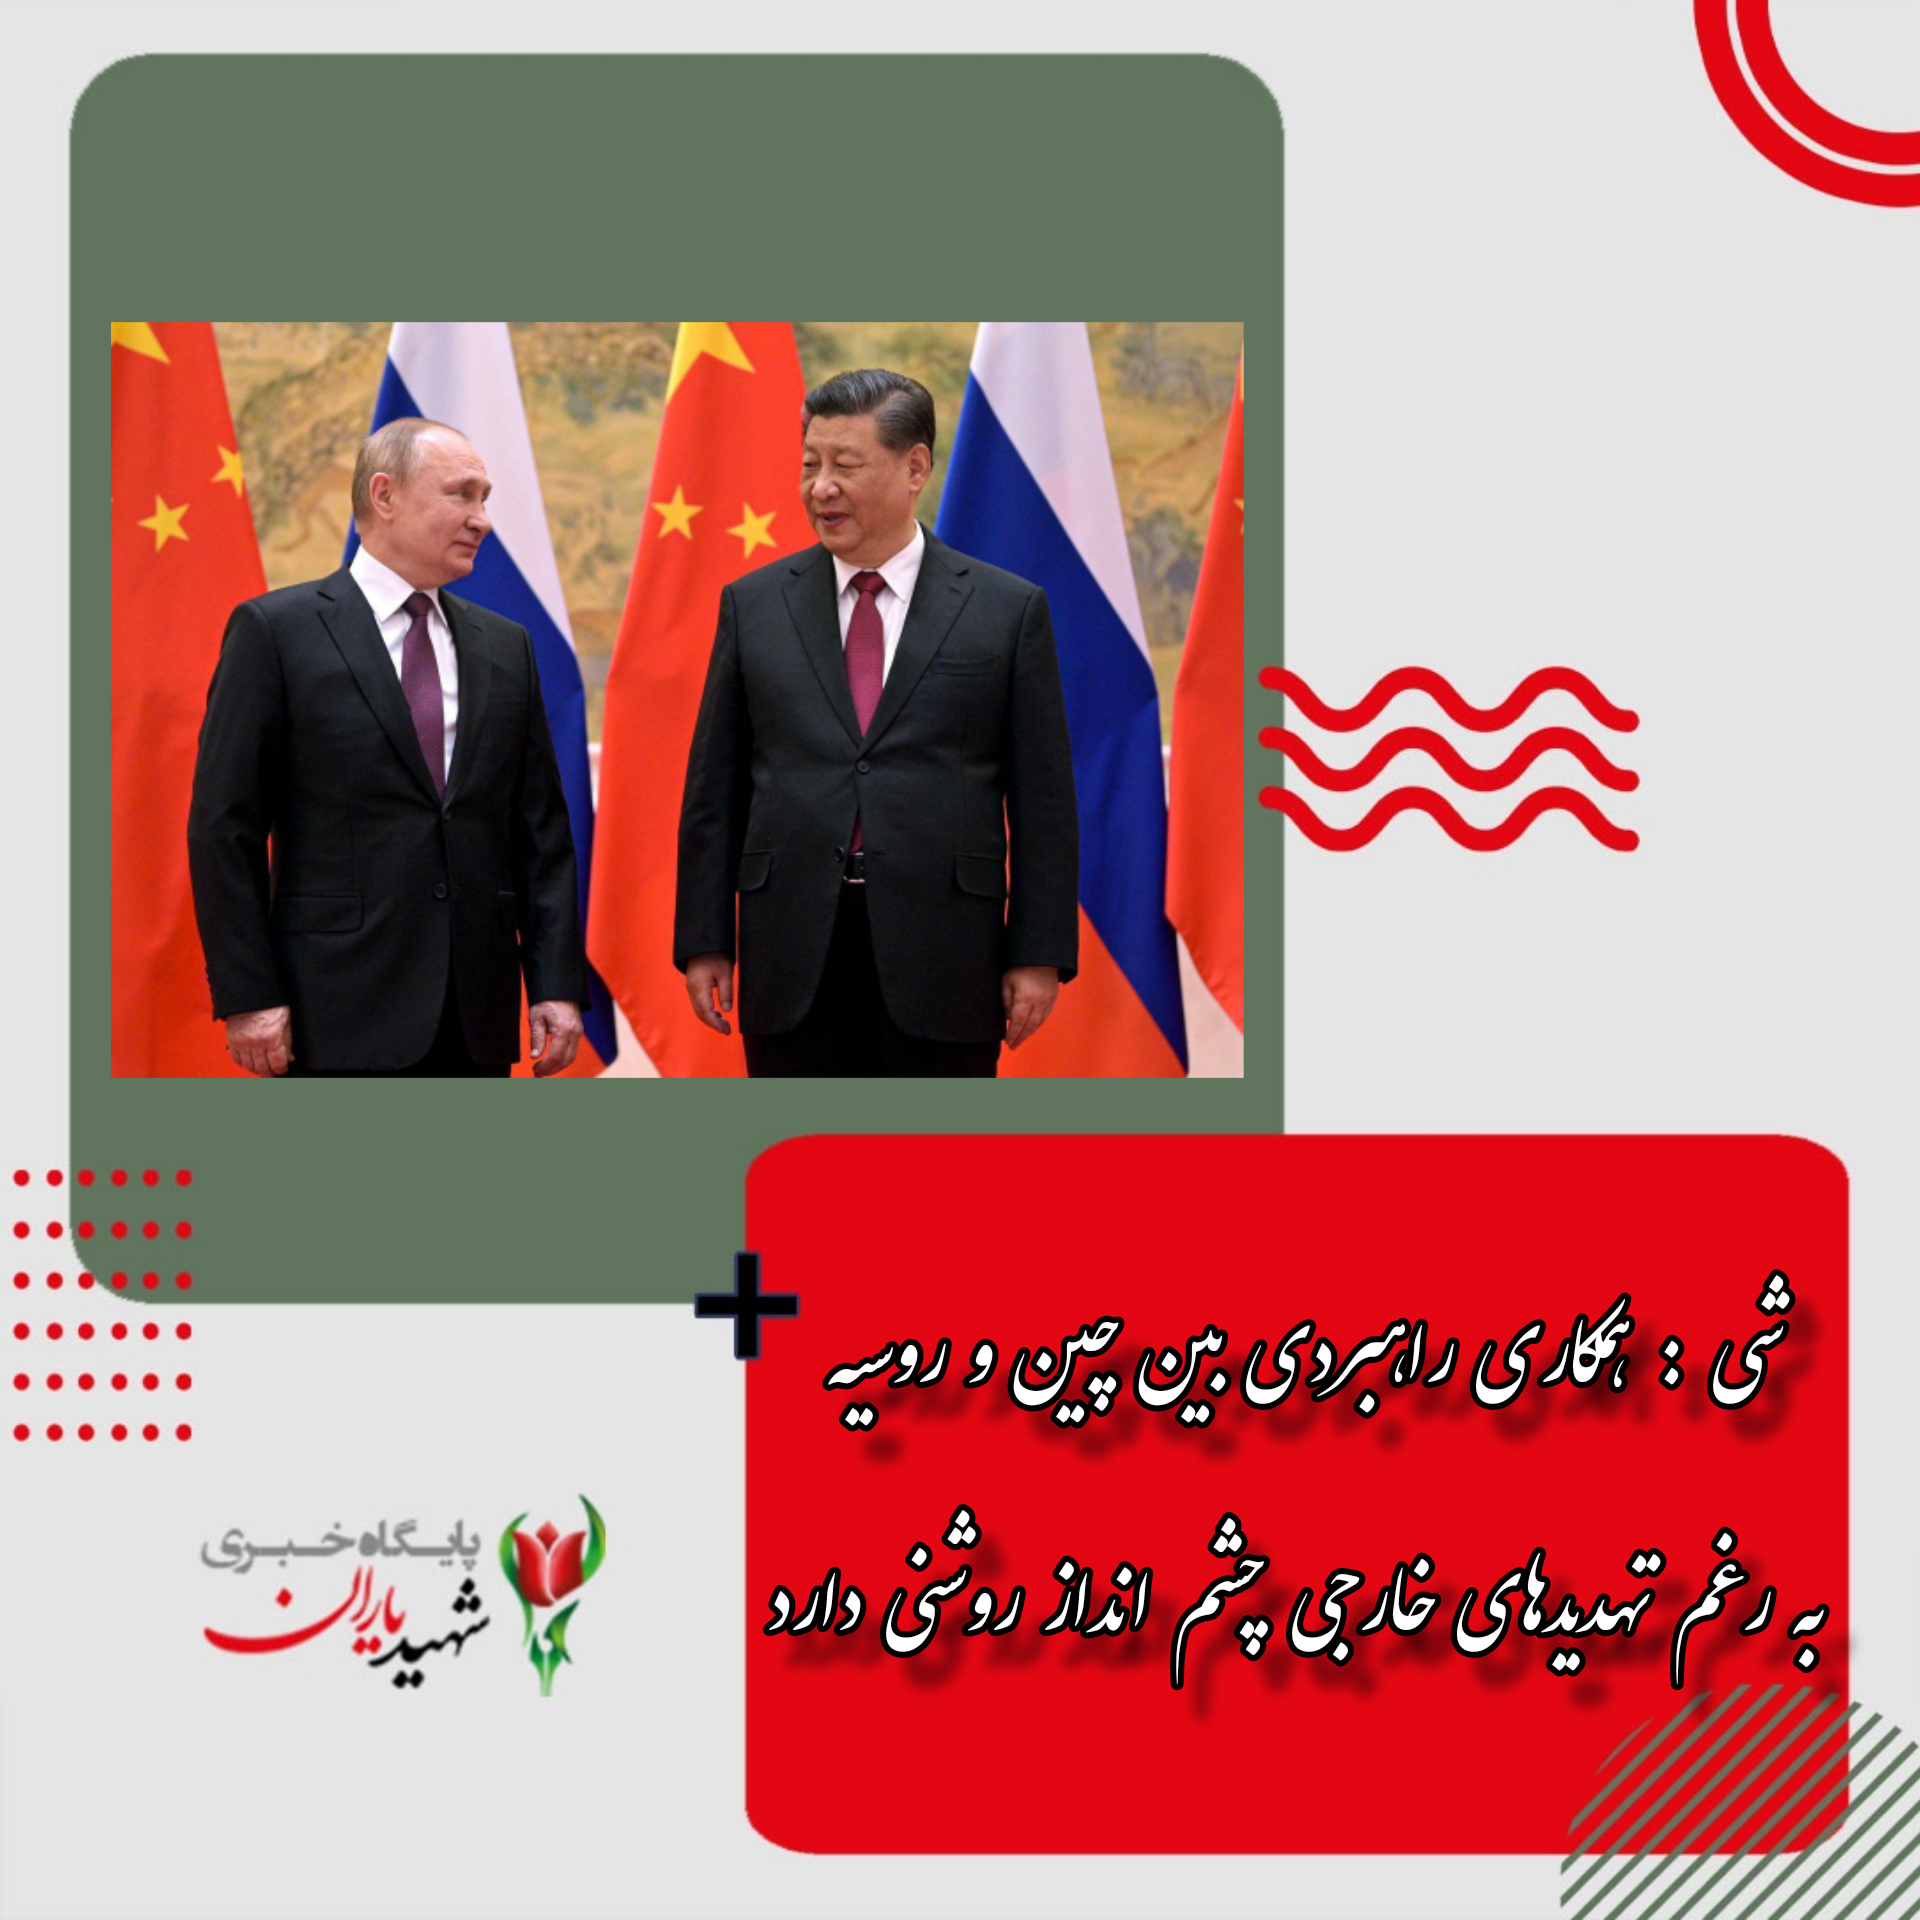 شی : همکاری راهبردی بین چین و روسیه به رغم تهدیدهای خارجی چشم انداز روشنی دارد